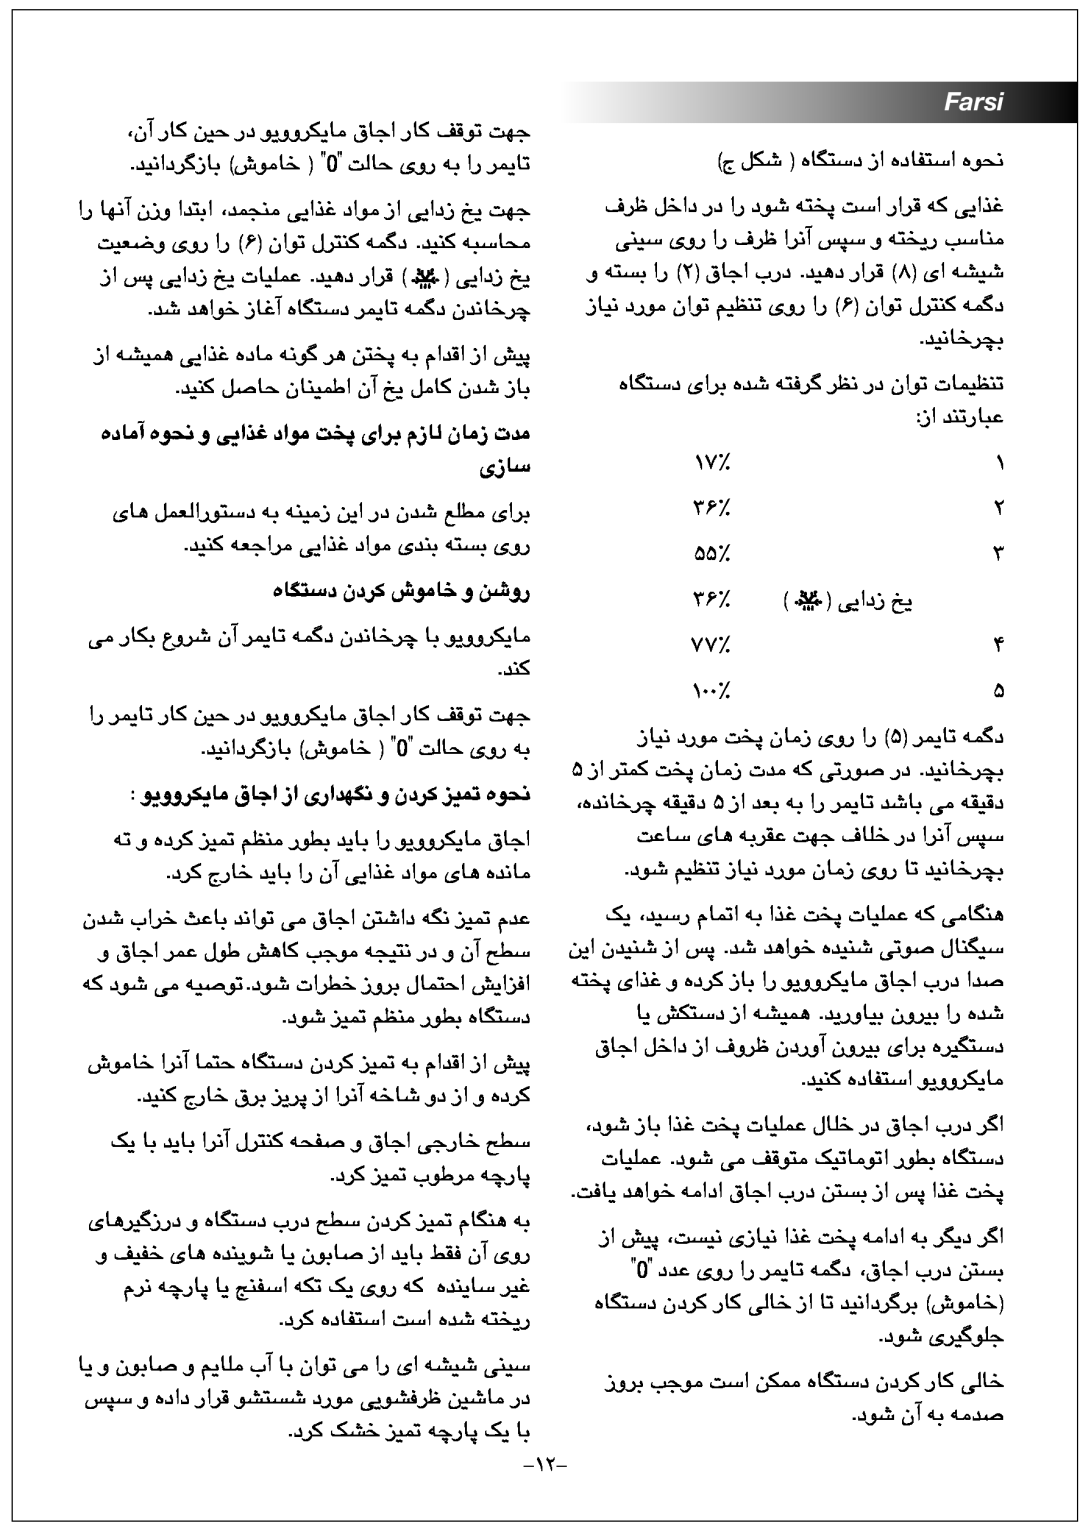 Black & Decker MY2000PSA manual ﻩﺩﺎﻣﺁ ﻩﻮﺤﻧ ﻭ ﯽﯾﺍﺬﻏ ﺩﺍﻮﻣ ﺖﺨﭘ ﯼﺍﺮﺑ ﻡﺯﺎﻟ ﻥﺎﻣﺯ ﺕﺪﻣ ﯼﺯﺎﺳ, ﻩﺎﮕﺘﺳﺩ ﻥﺩﺮﮐ ﺵﻮﻣﺎﺧ ﻭ ﻦﺷﻭﺭ, Farsi 